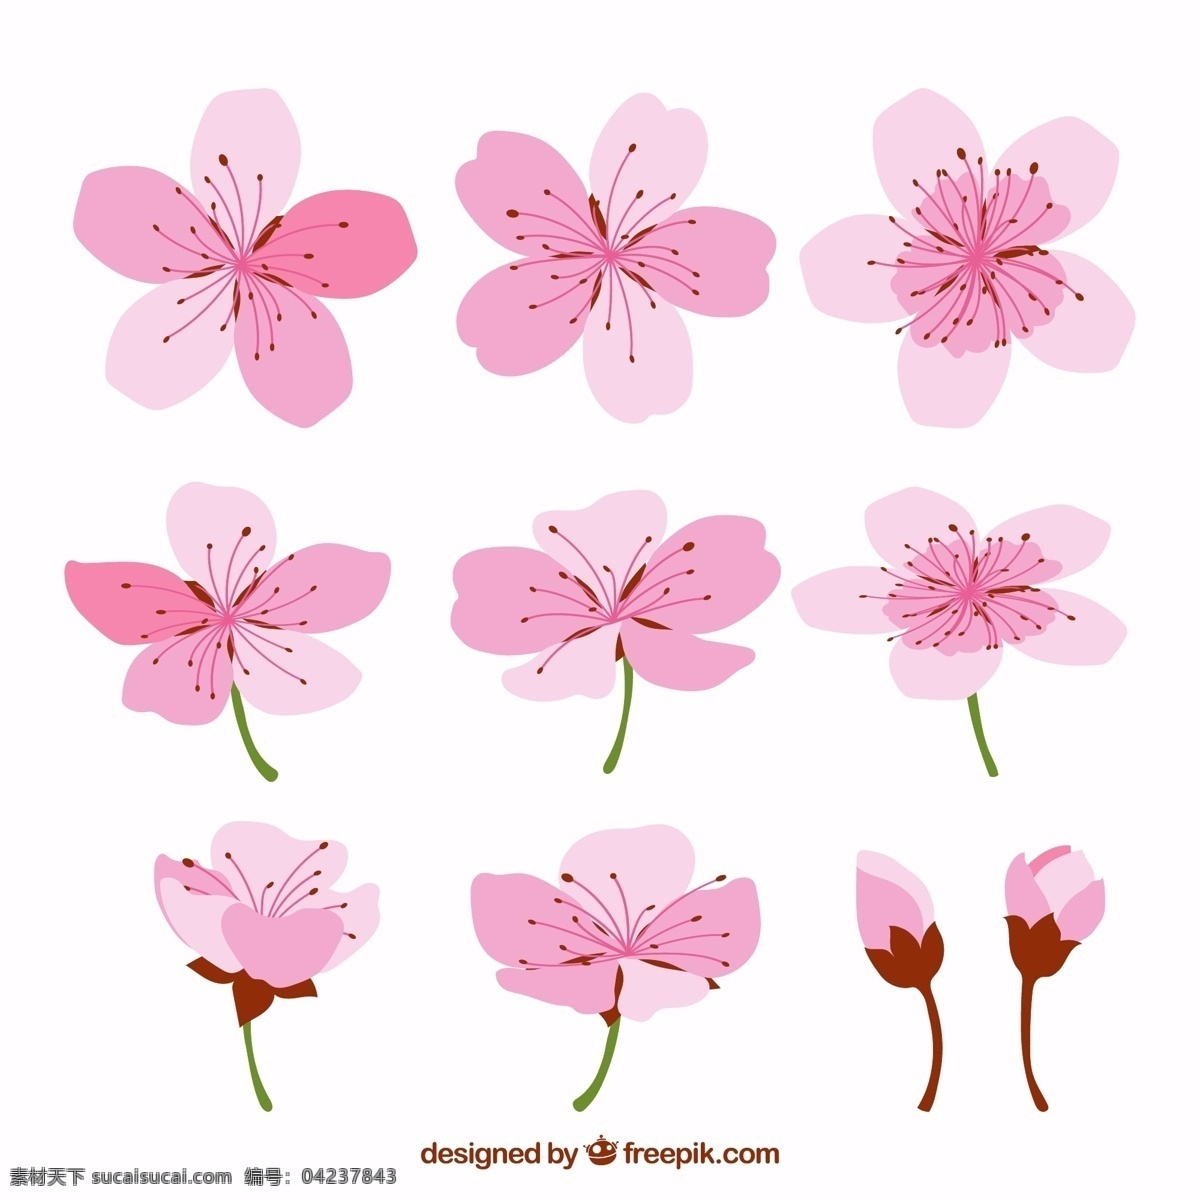 彩绘 粉色 樱花 花蕾 矢量图 源文件 矢量 高清图片